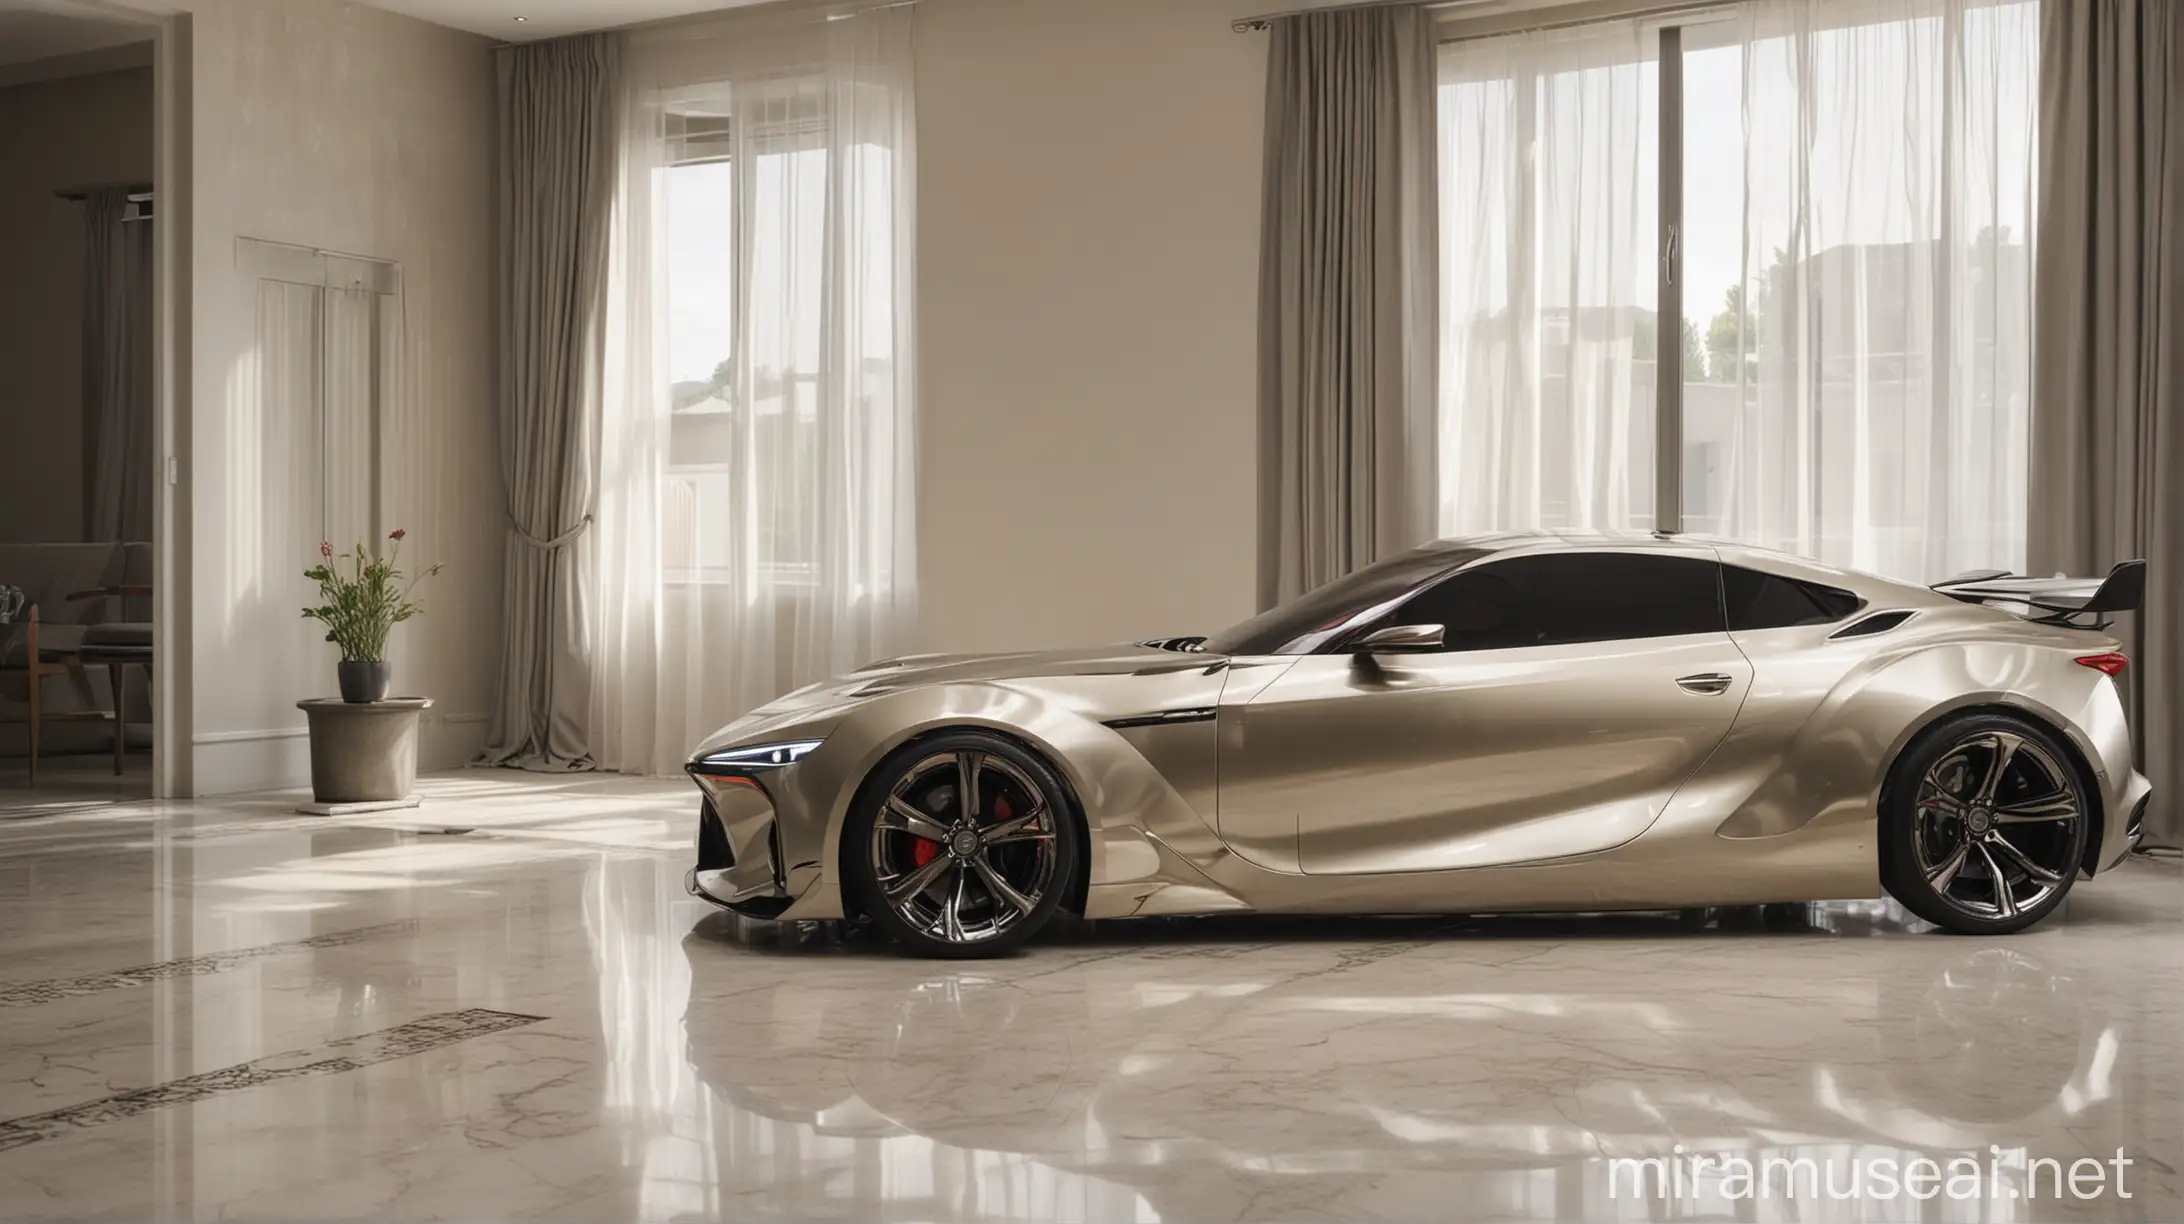 Toyota Celica Concept Car Reborn in a Villa Setting